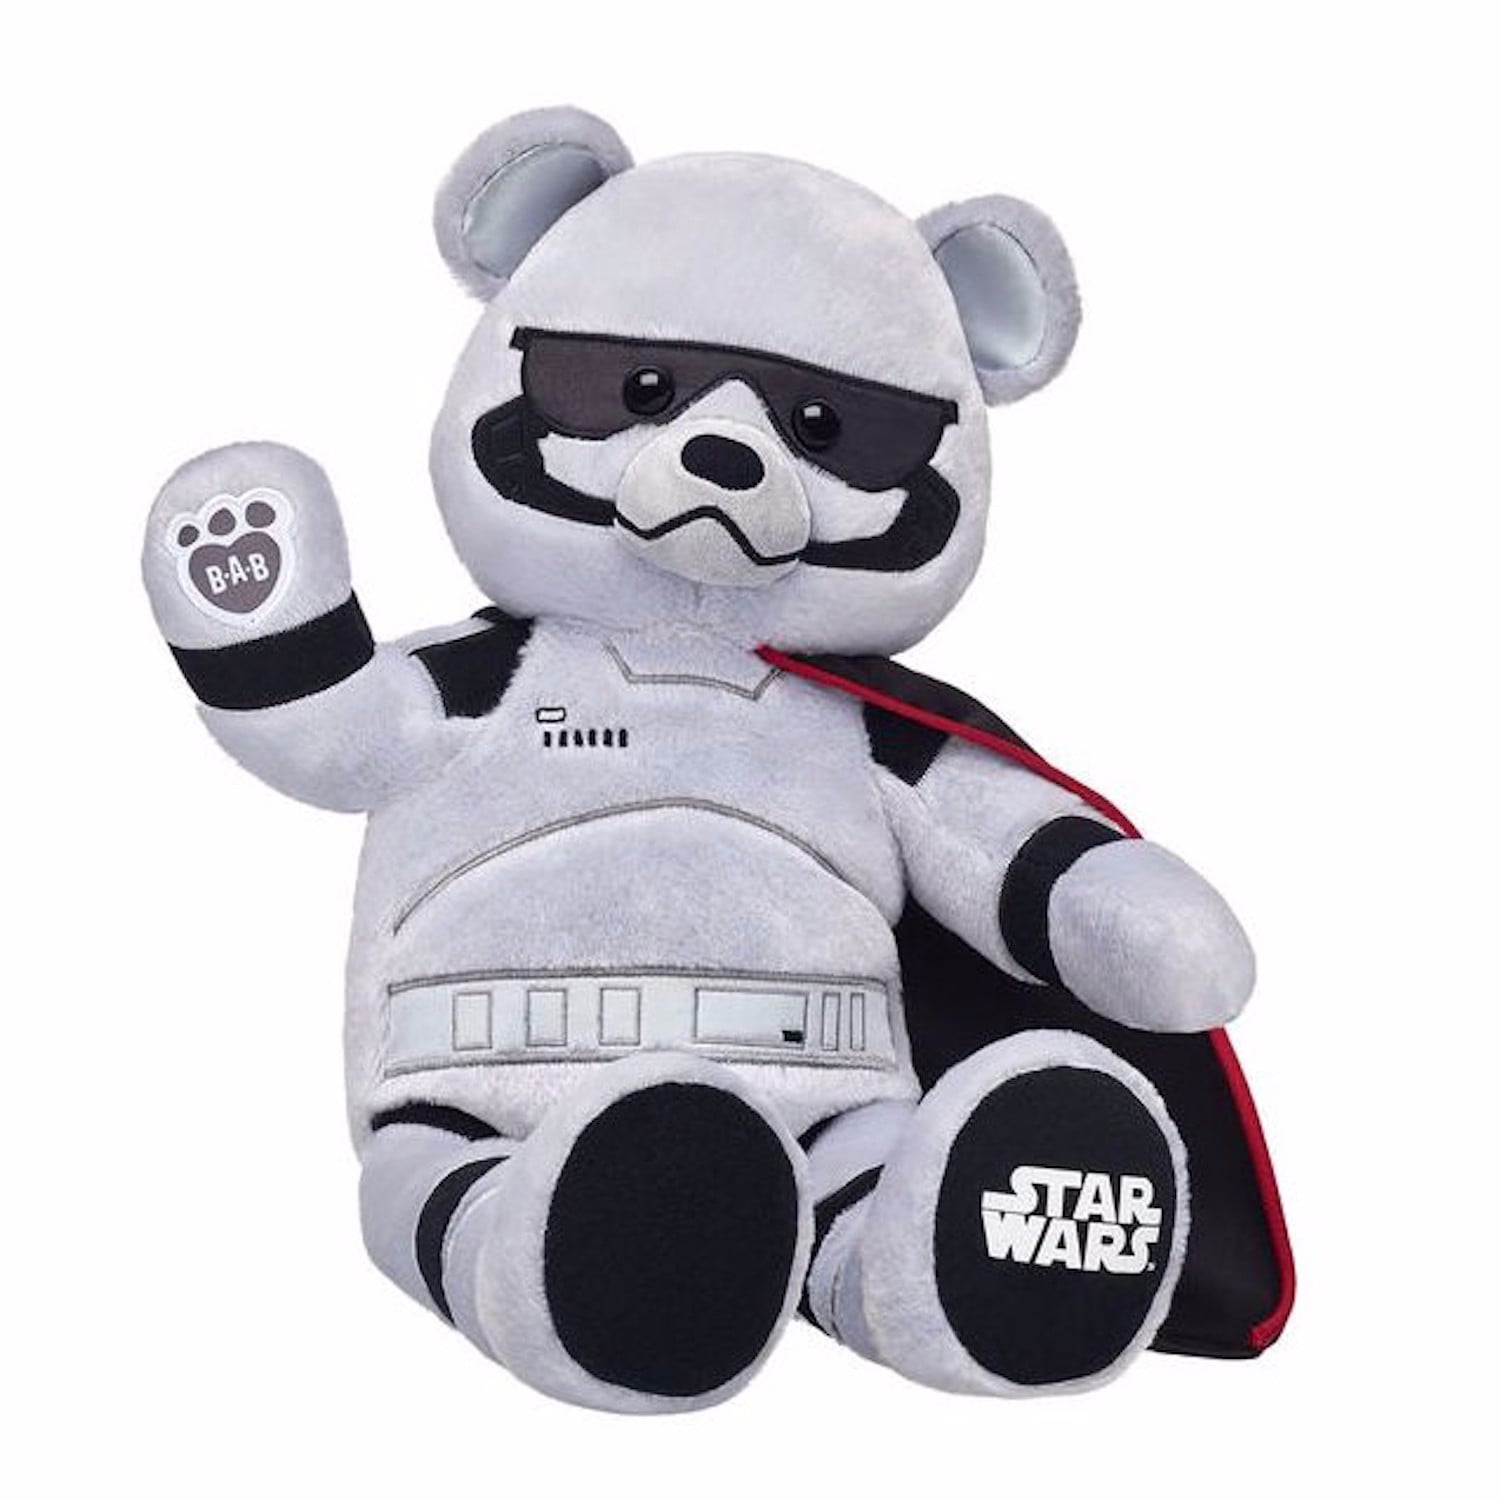 teddy bear like star wars figure